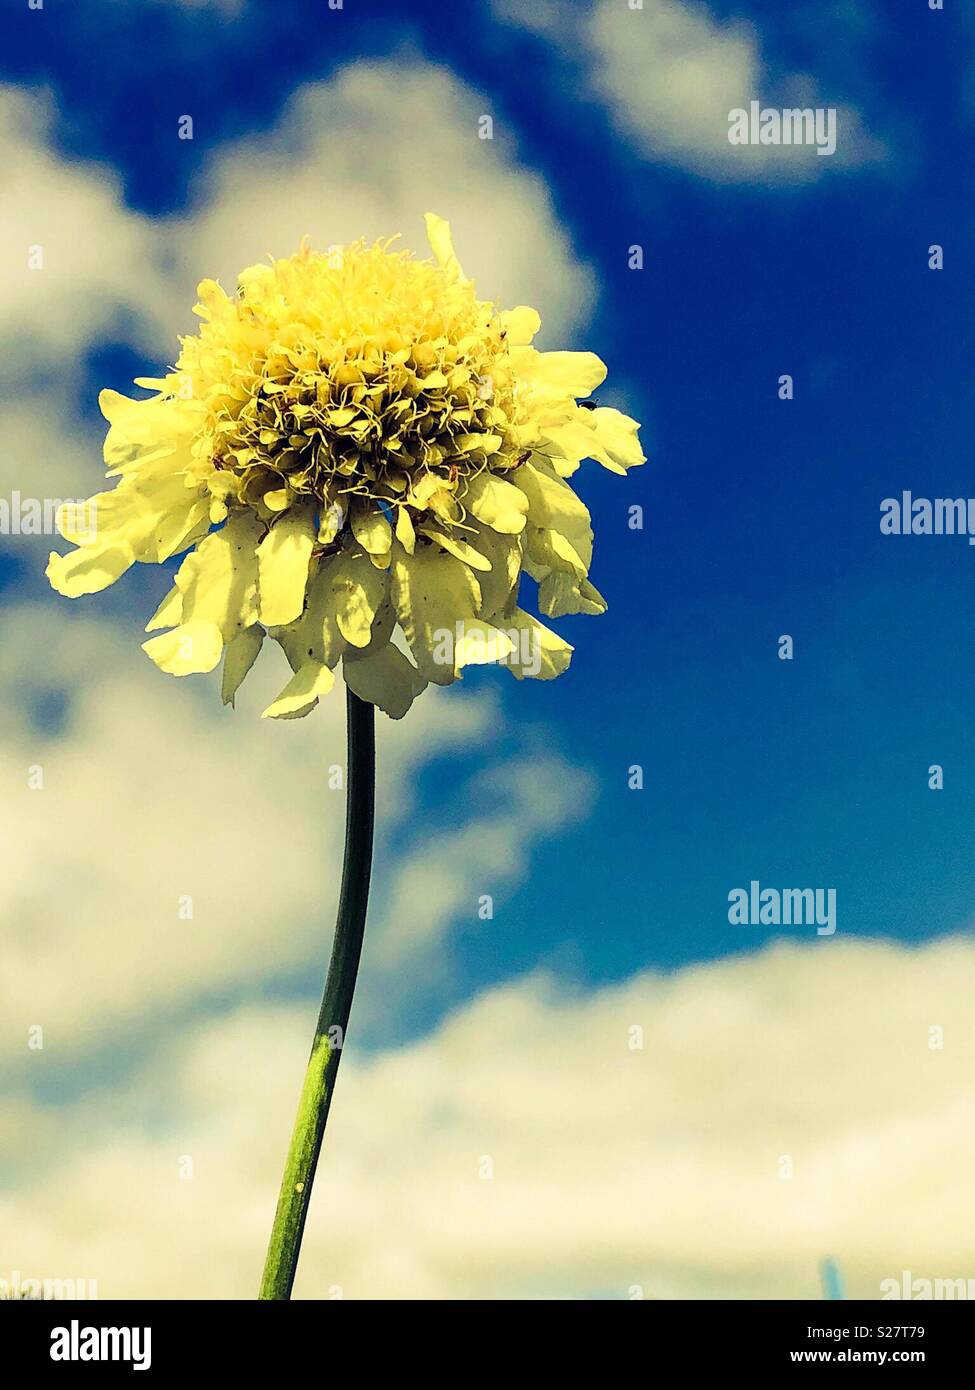 Géant, fleur jaune scabious atteindre pour le soleil. Indiqué contre un ciel bleu avec des nuages blancs Banque D'Images